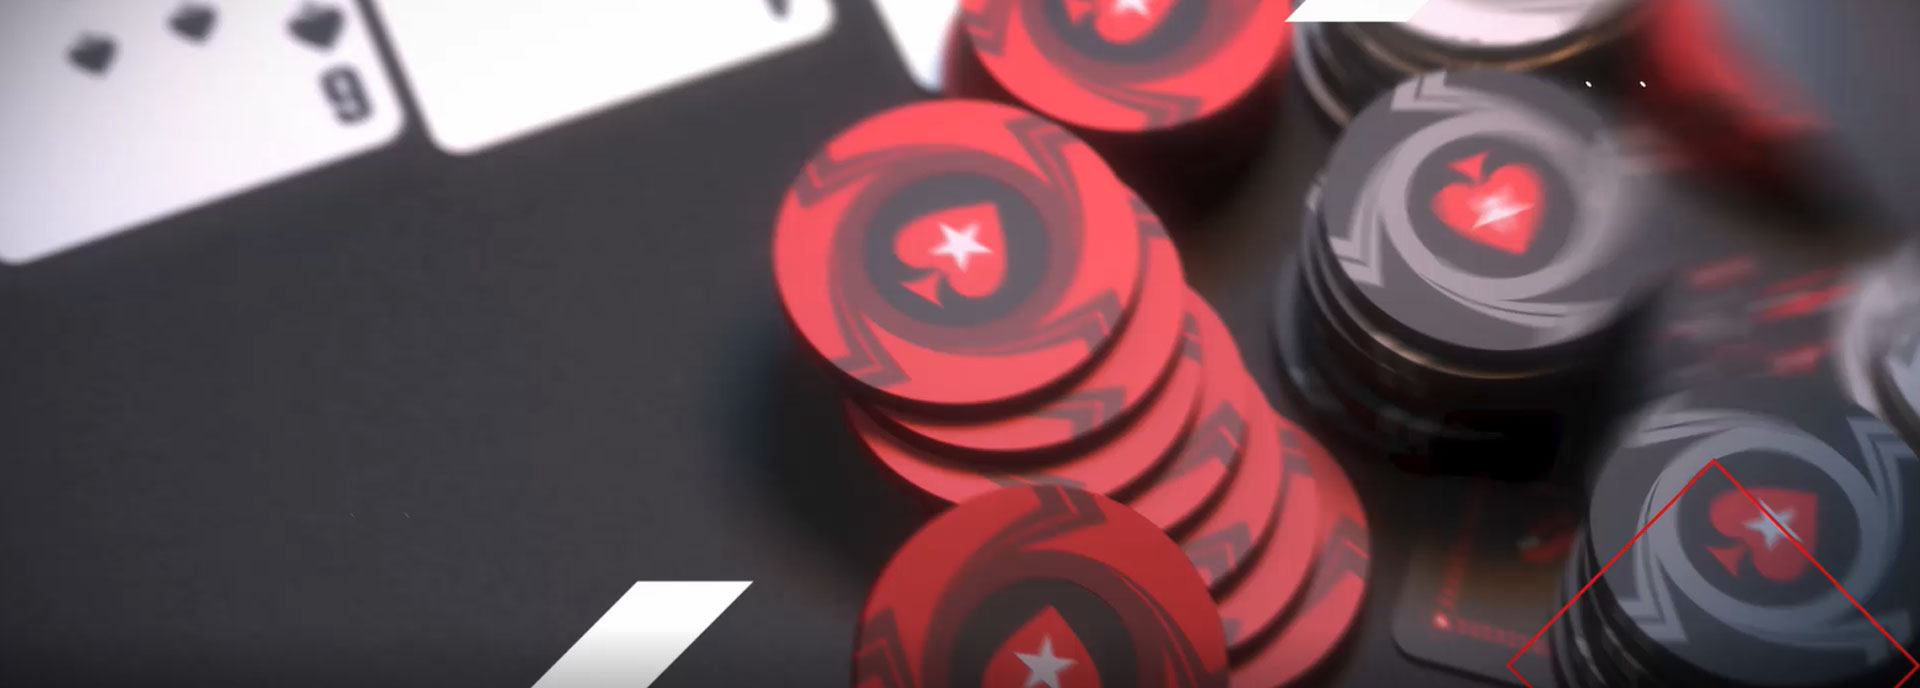 Покер старс играть онлайн вы титан казино правила